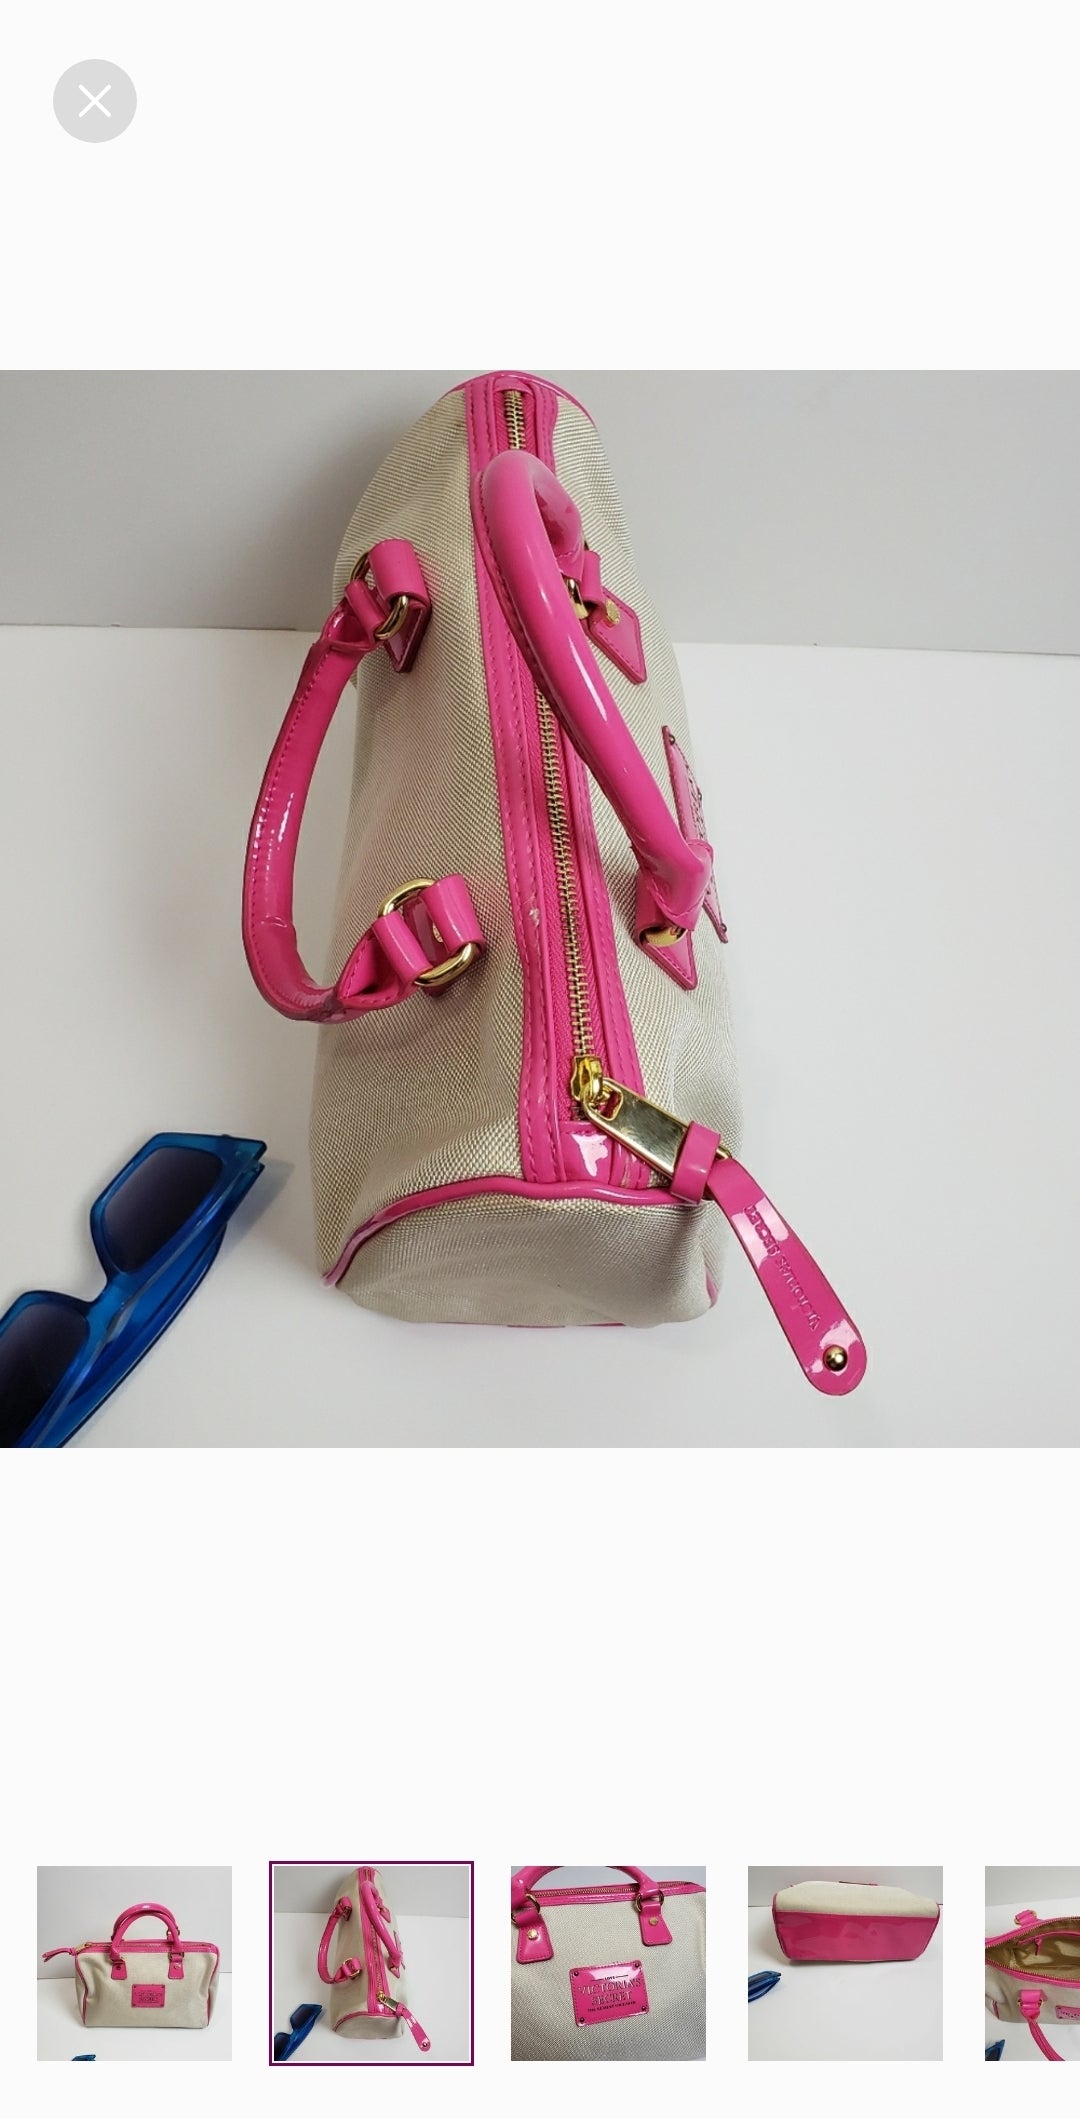 Pink bag (victoria secret)